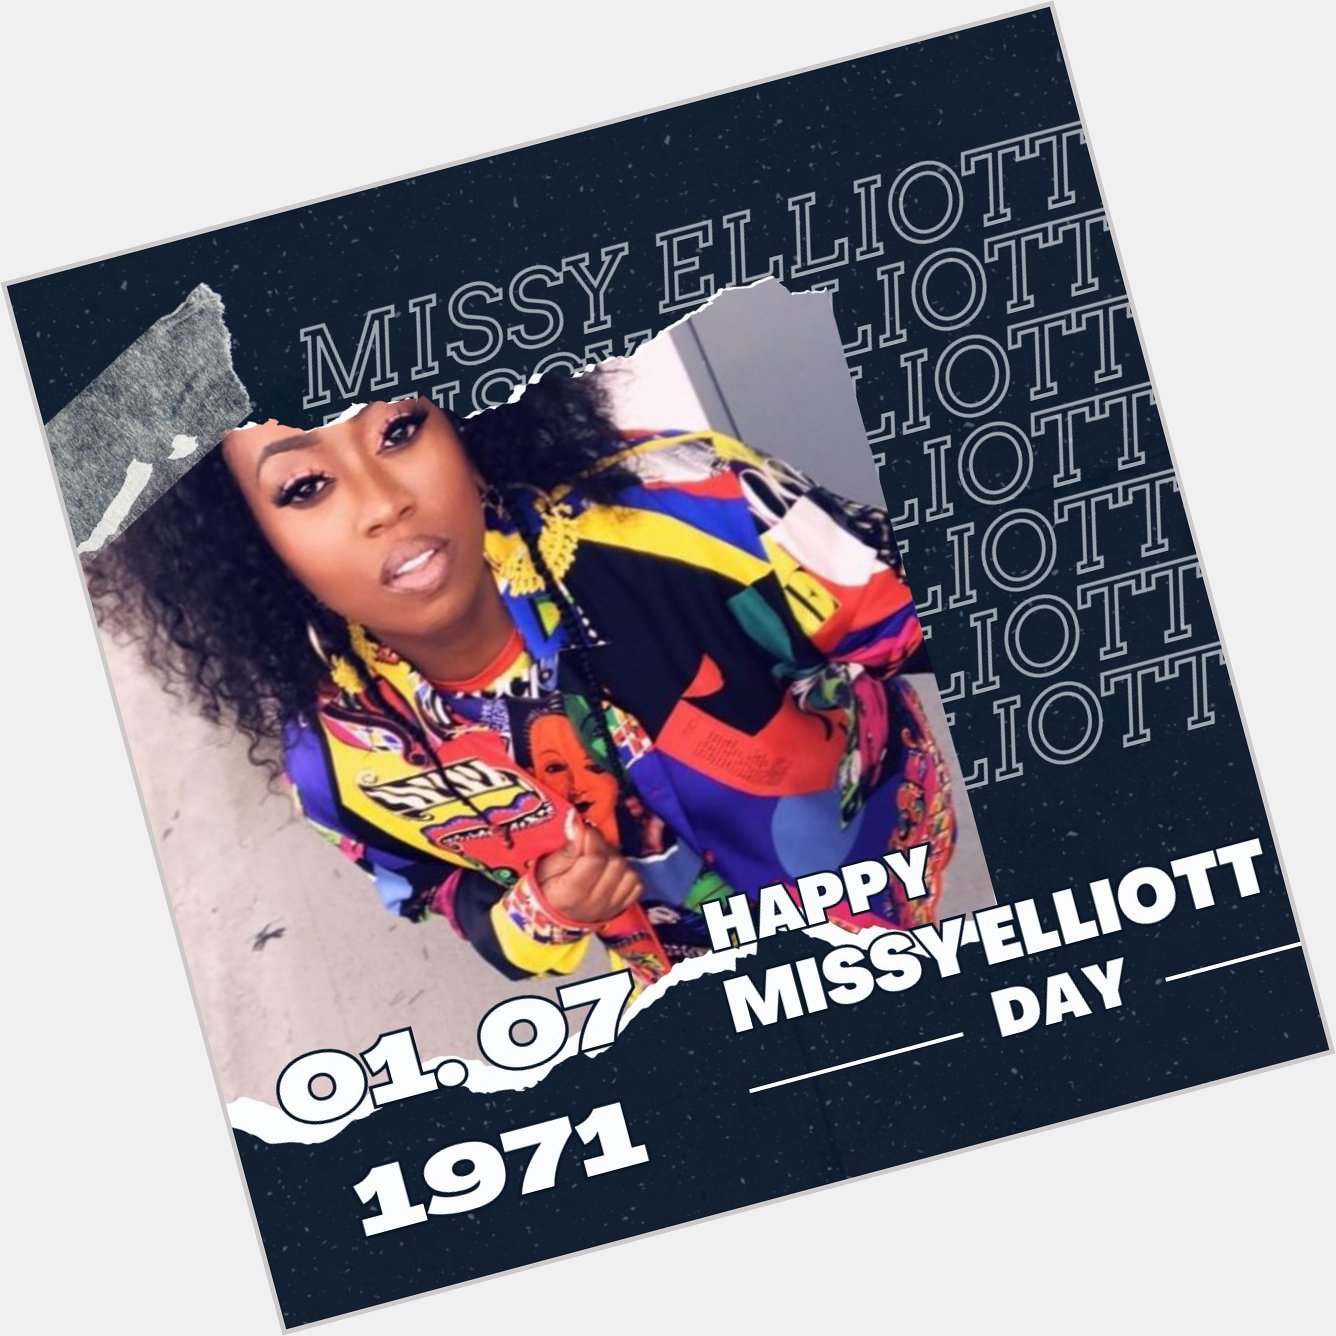 Happy Birthday Missy Elliott.                 Quelle: Unbekannt  